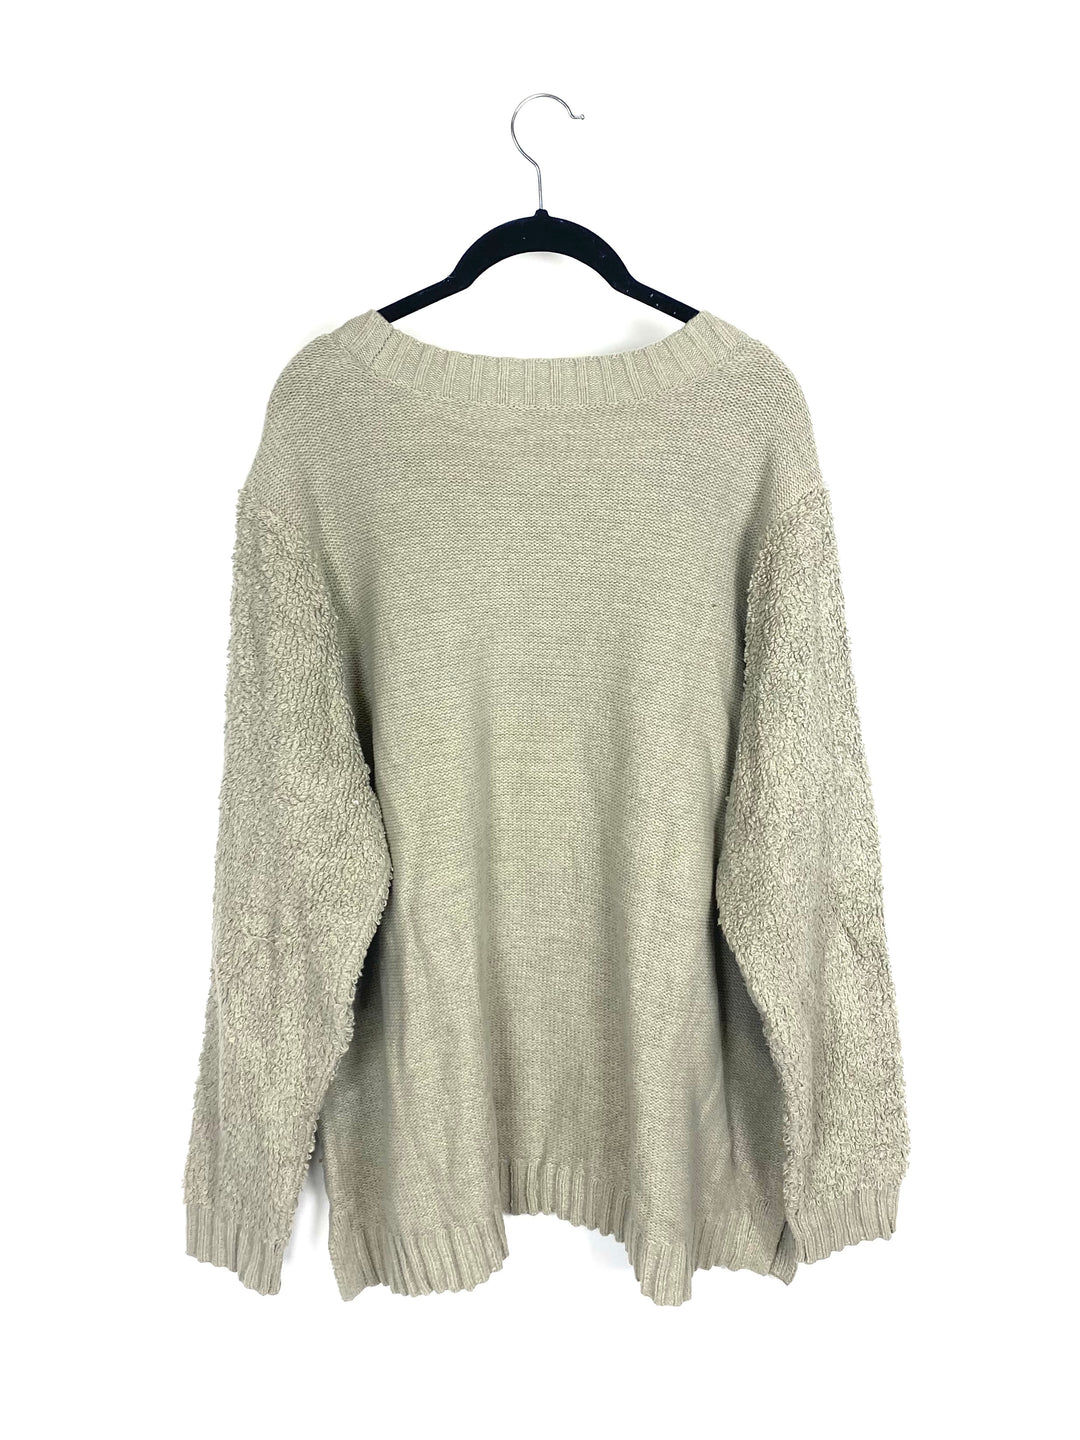 Grey Fuzzy Sweater - 1X